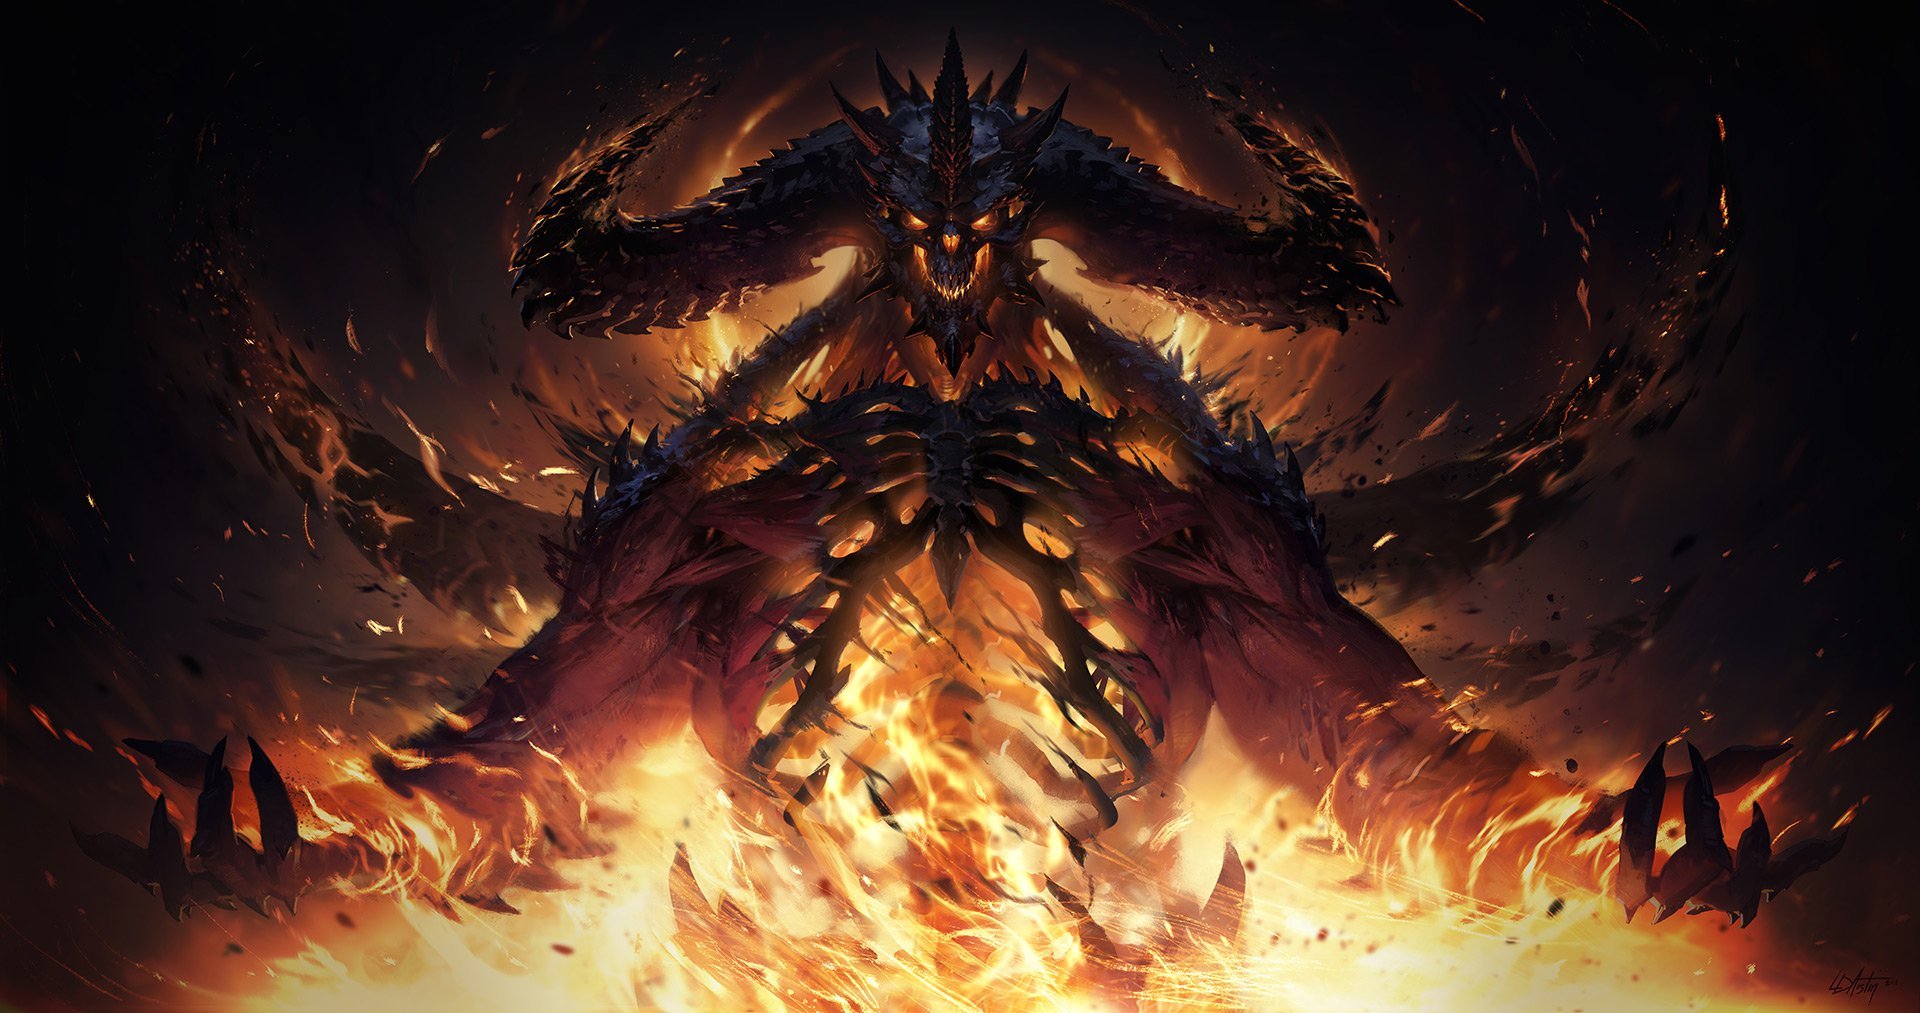 Diablo Immortal sur PC : Les Ennemis et Combats de Boss que Nous Attendons Tous